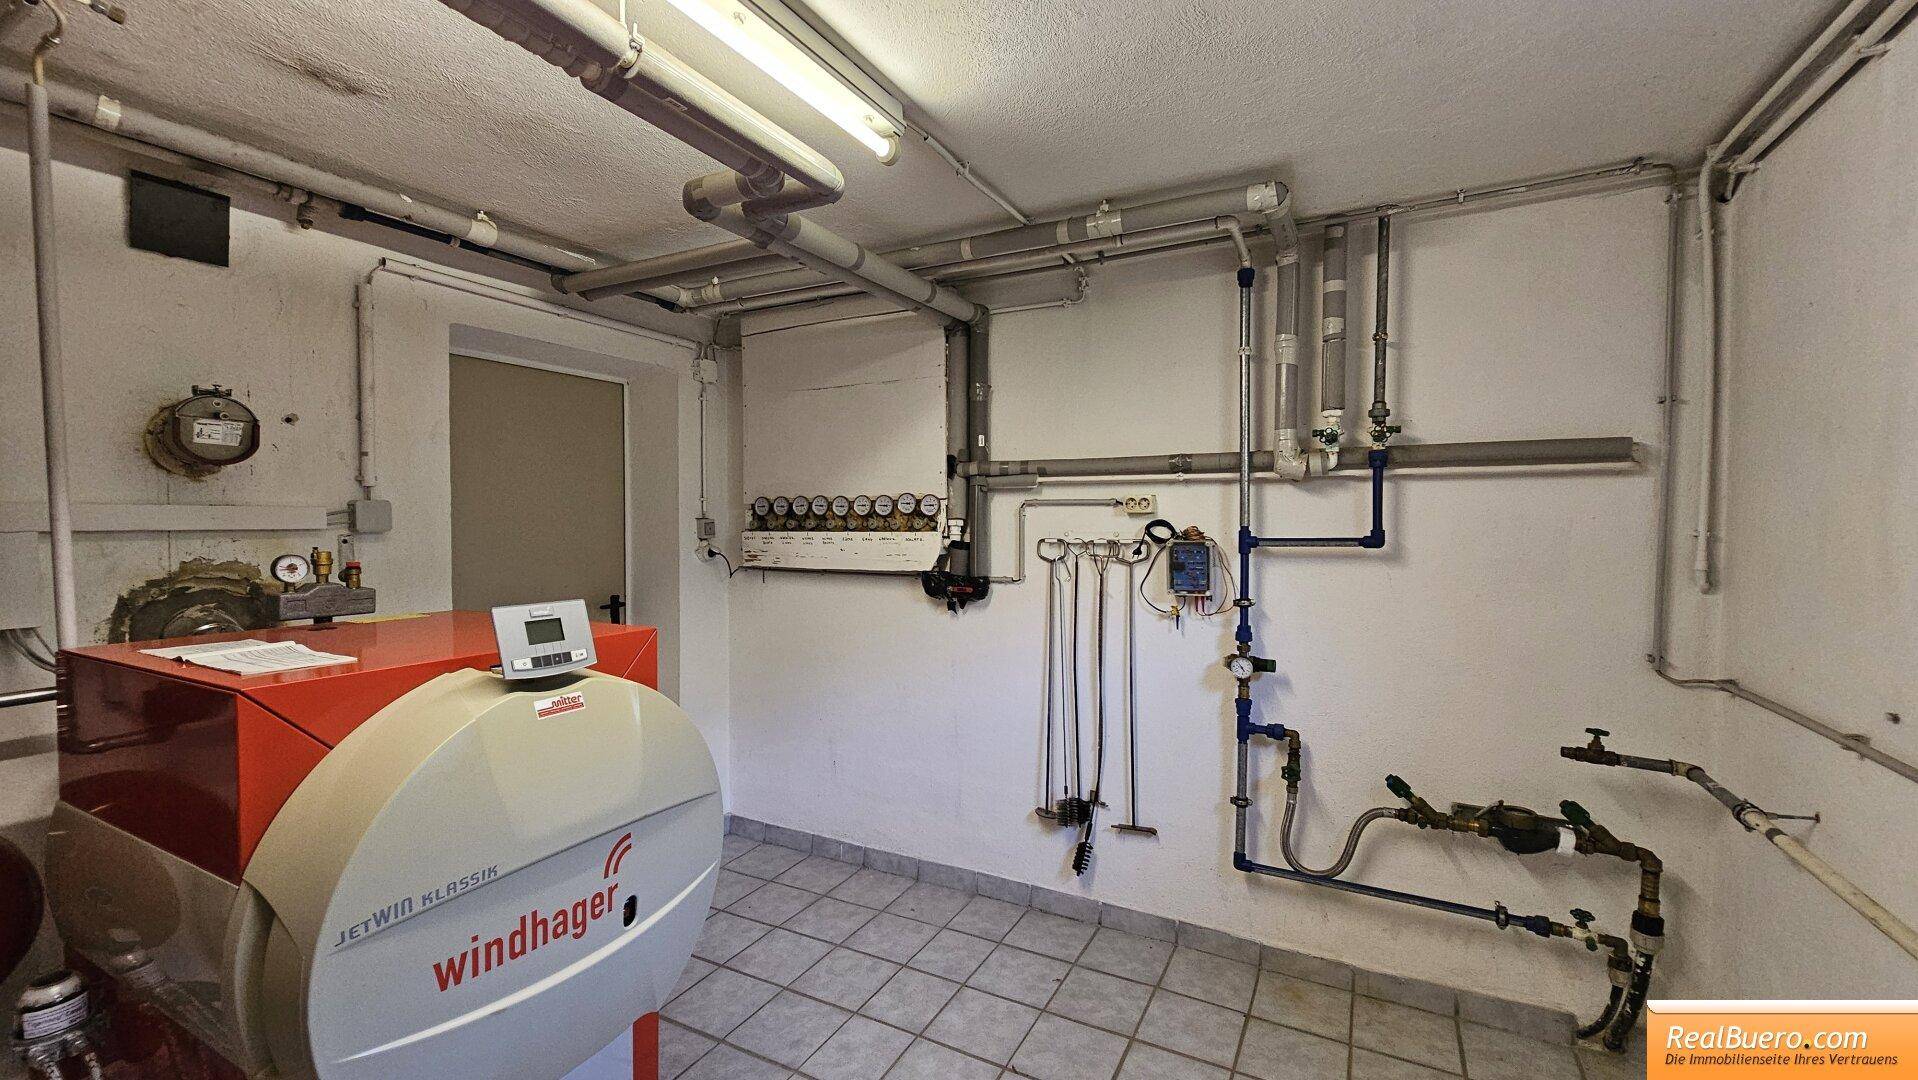 Kellerraum 2 - Heizraum ist der Ölheizkessel mit Warmwasserspeicher, Hauswasserwer,